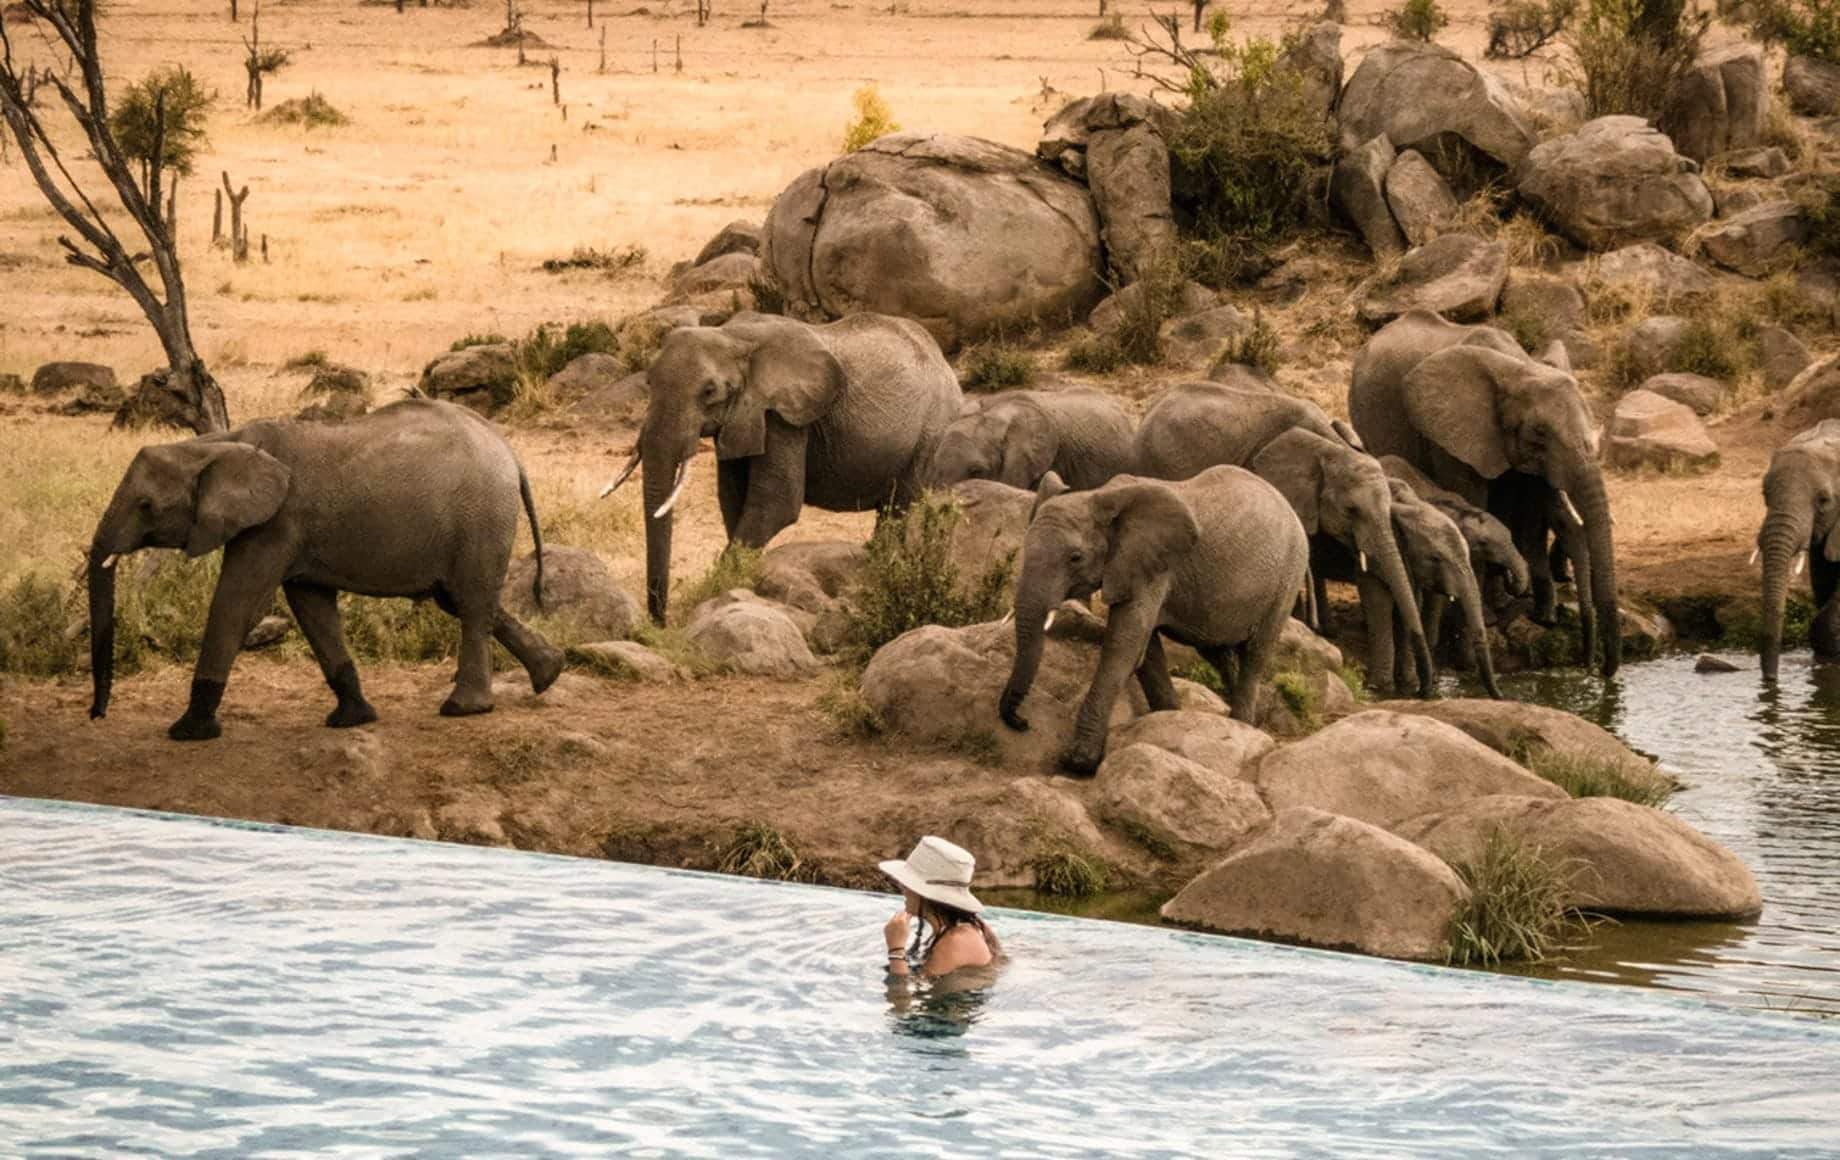 micato safari tanzania